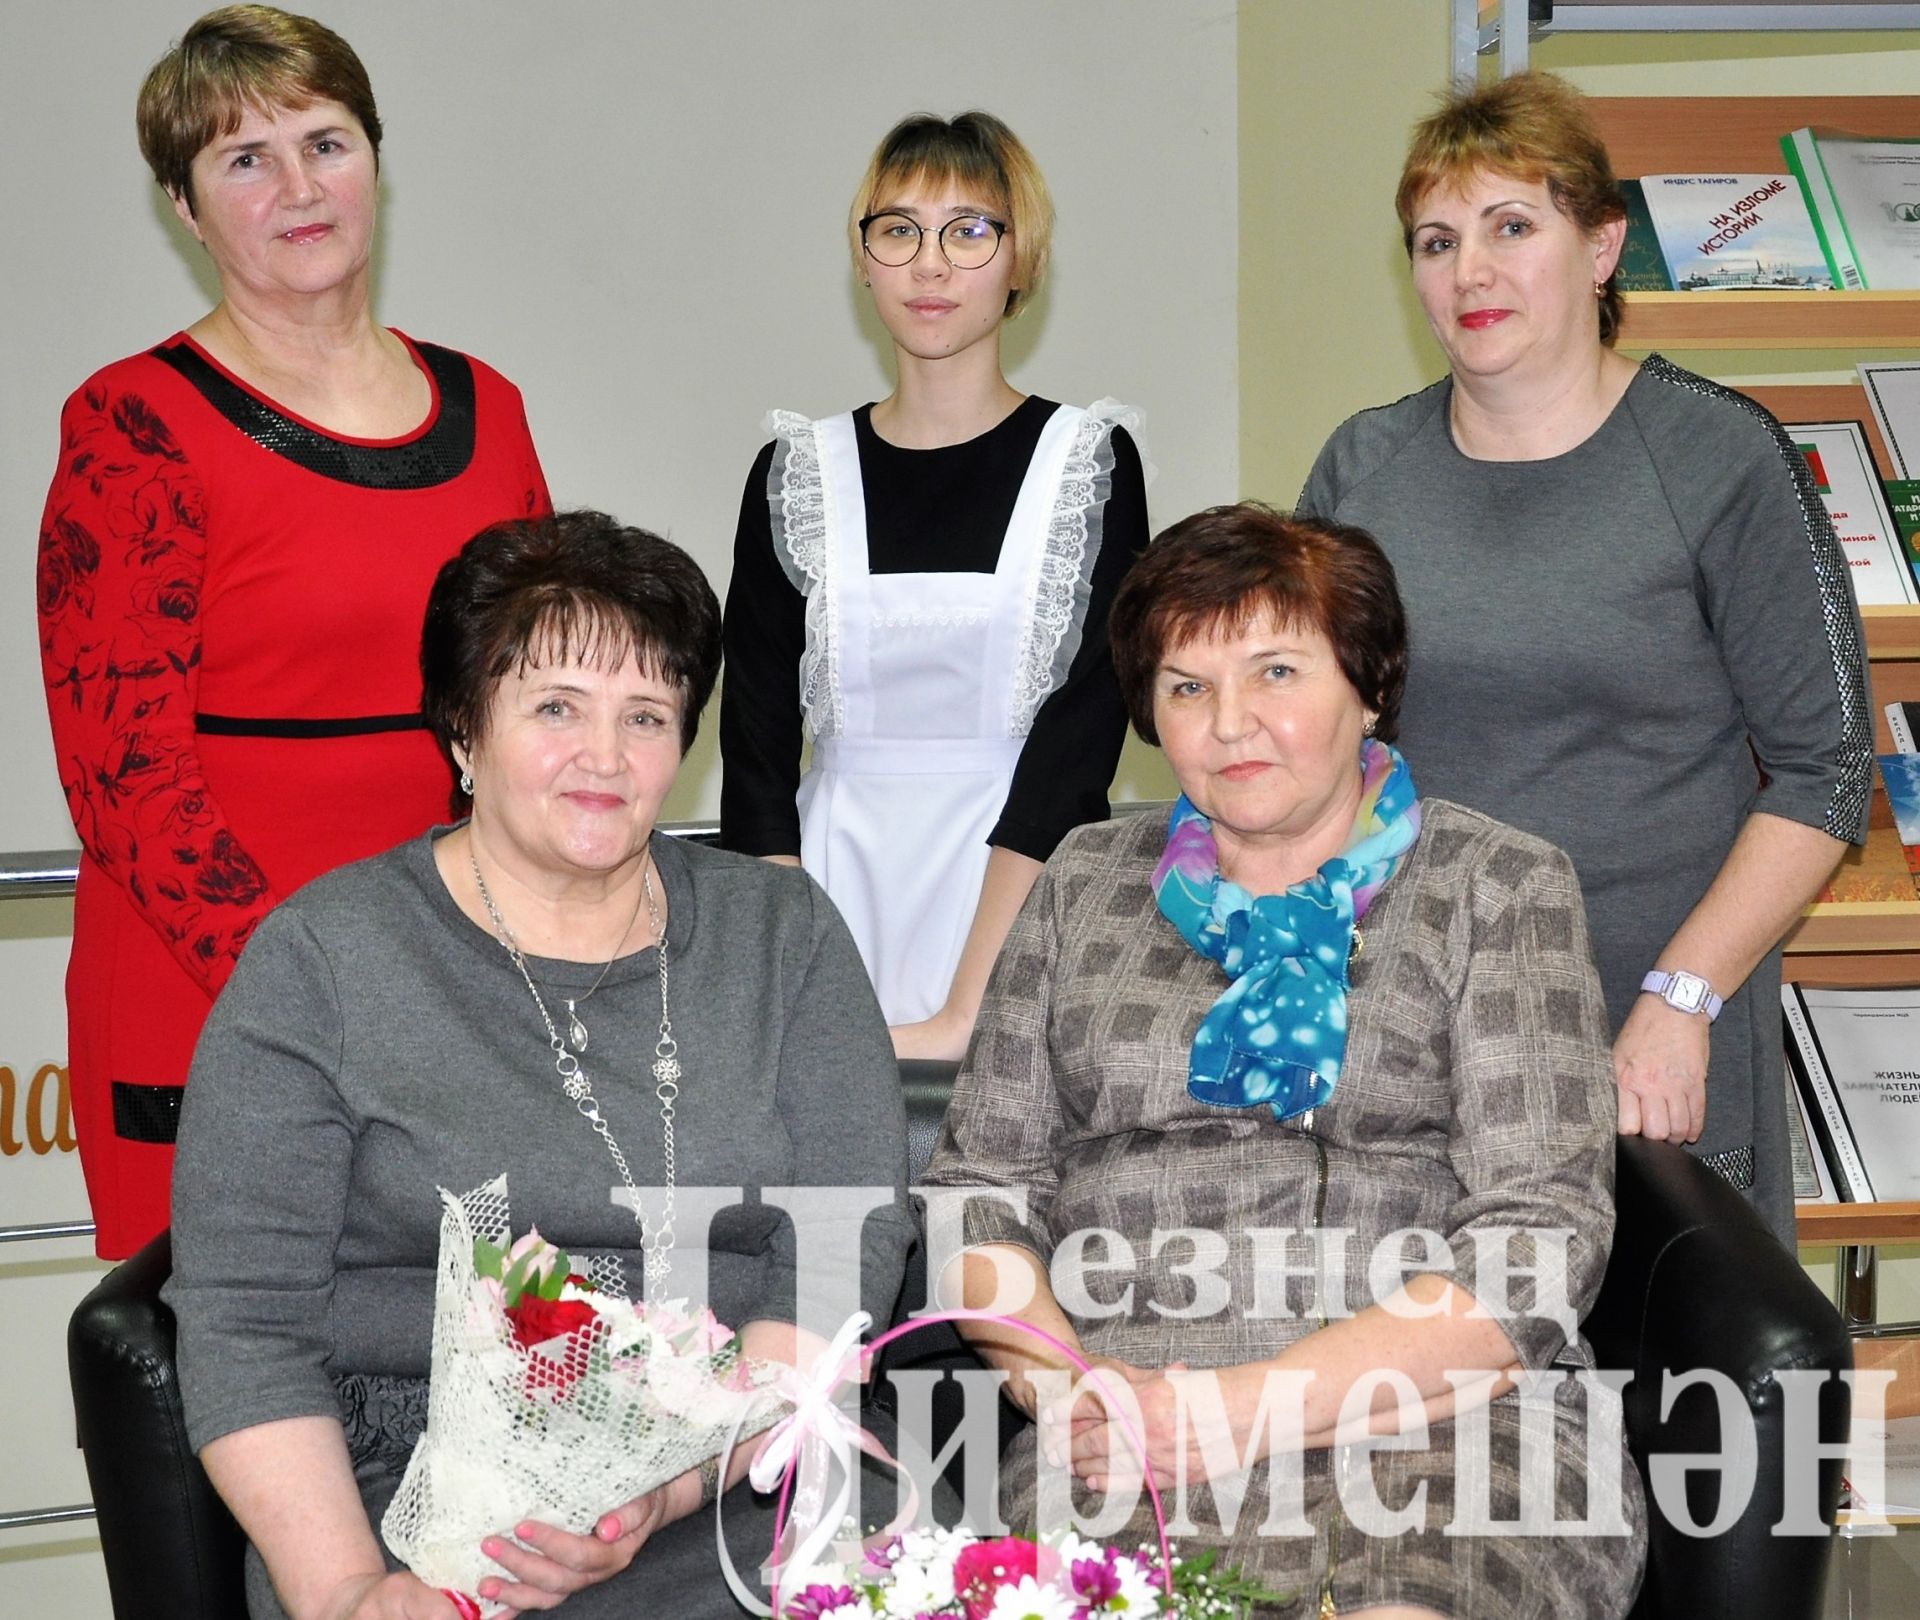 В Черемшане прошла встреча с писательницей Рамзией Габделхаковой (ФОТОРЕПОРТАЖ)